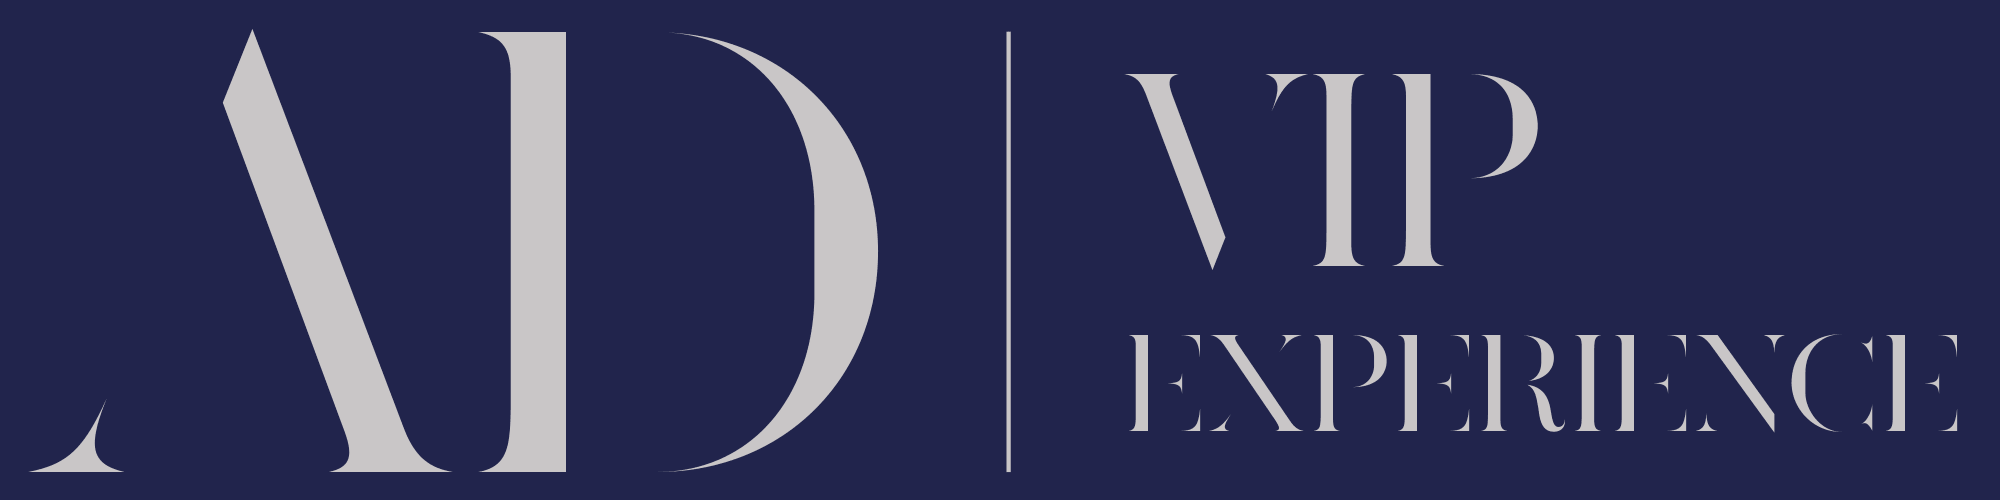 Logo AD VIP EXPERIENCE